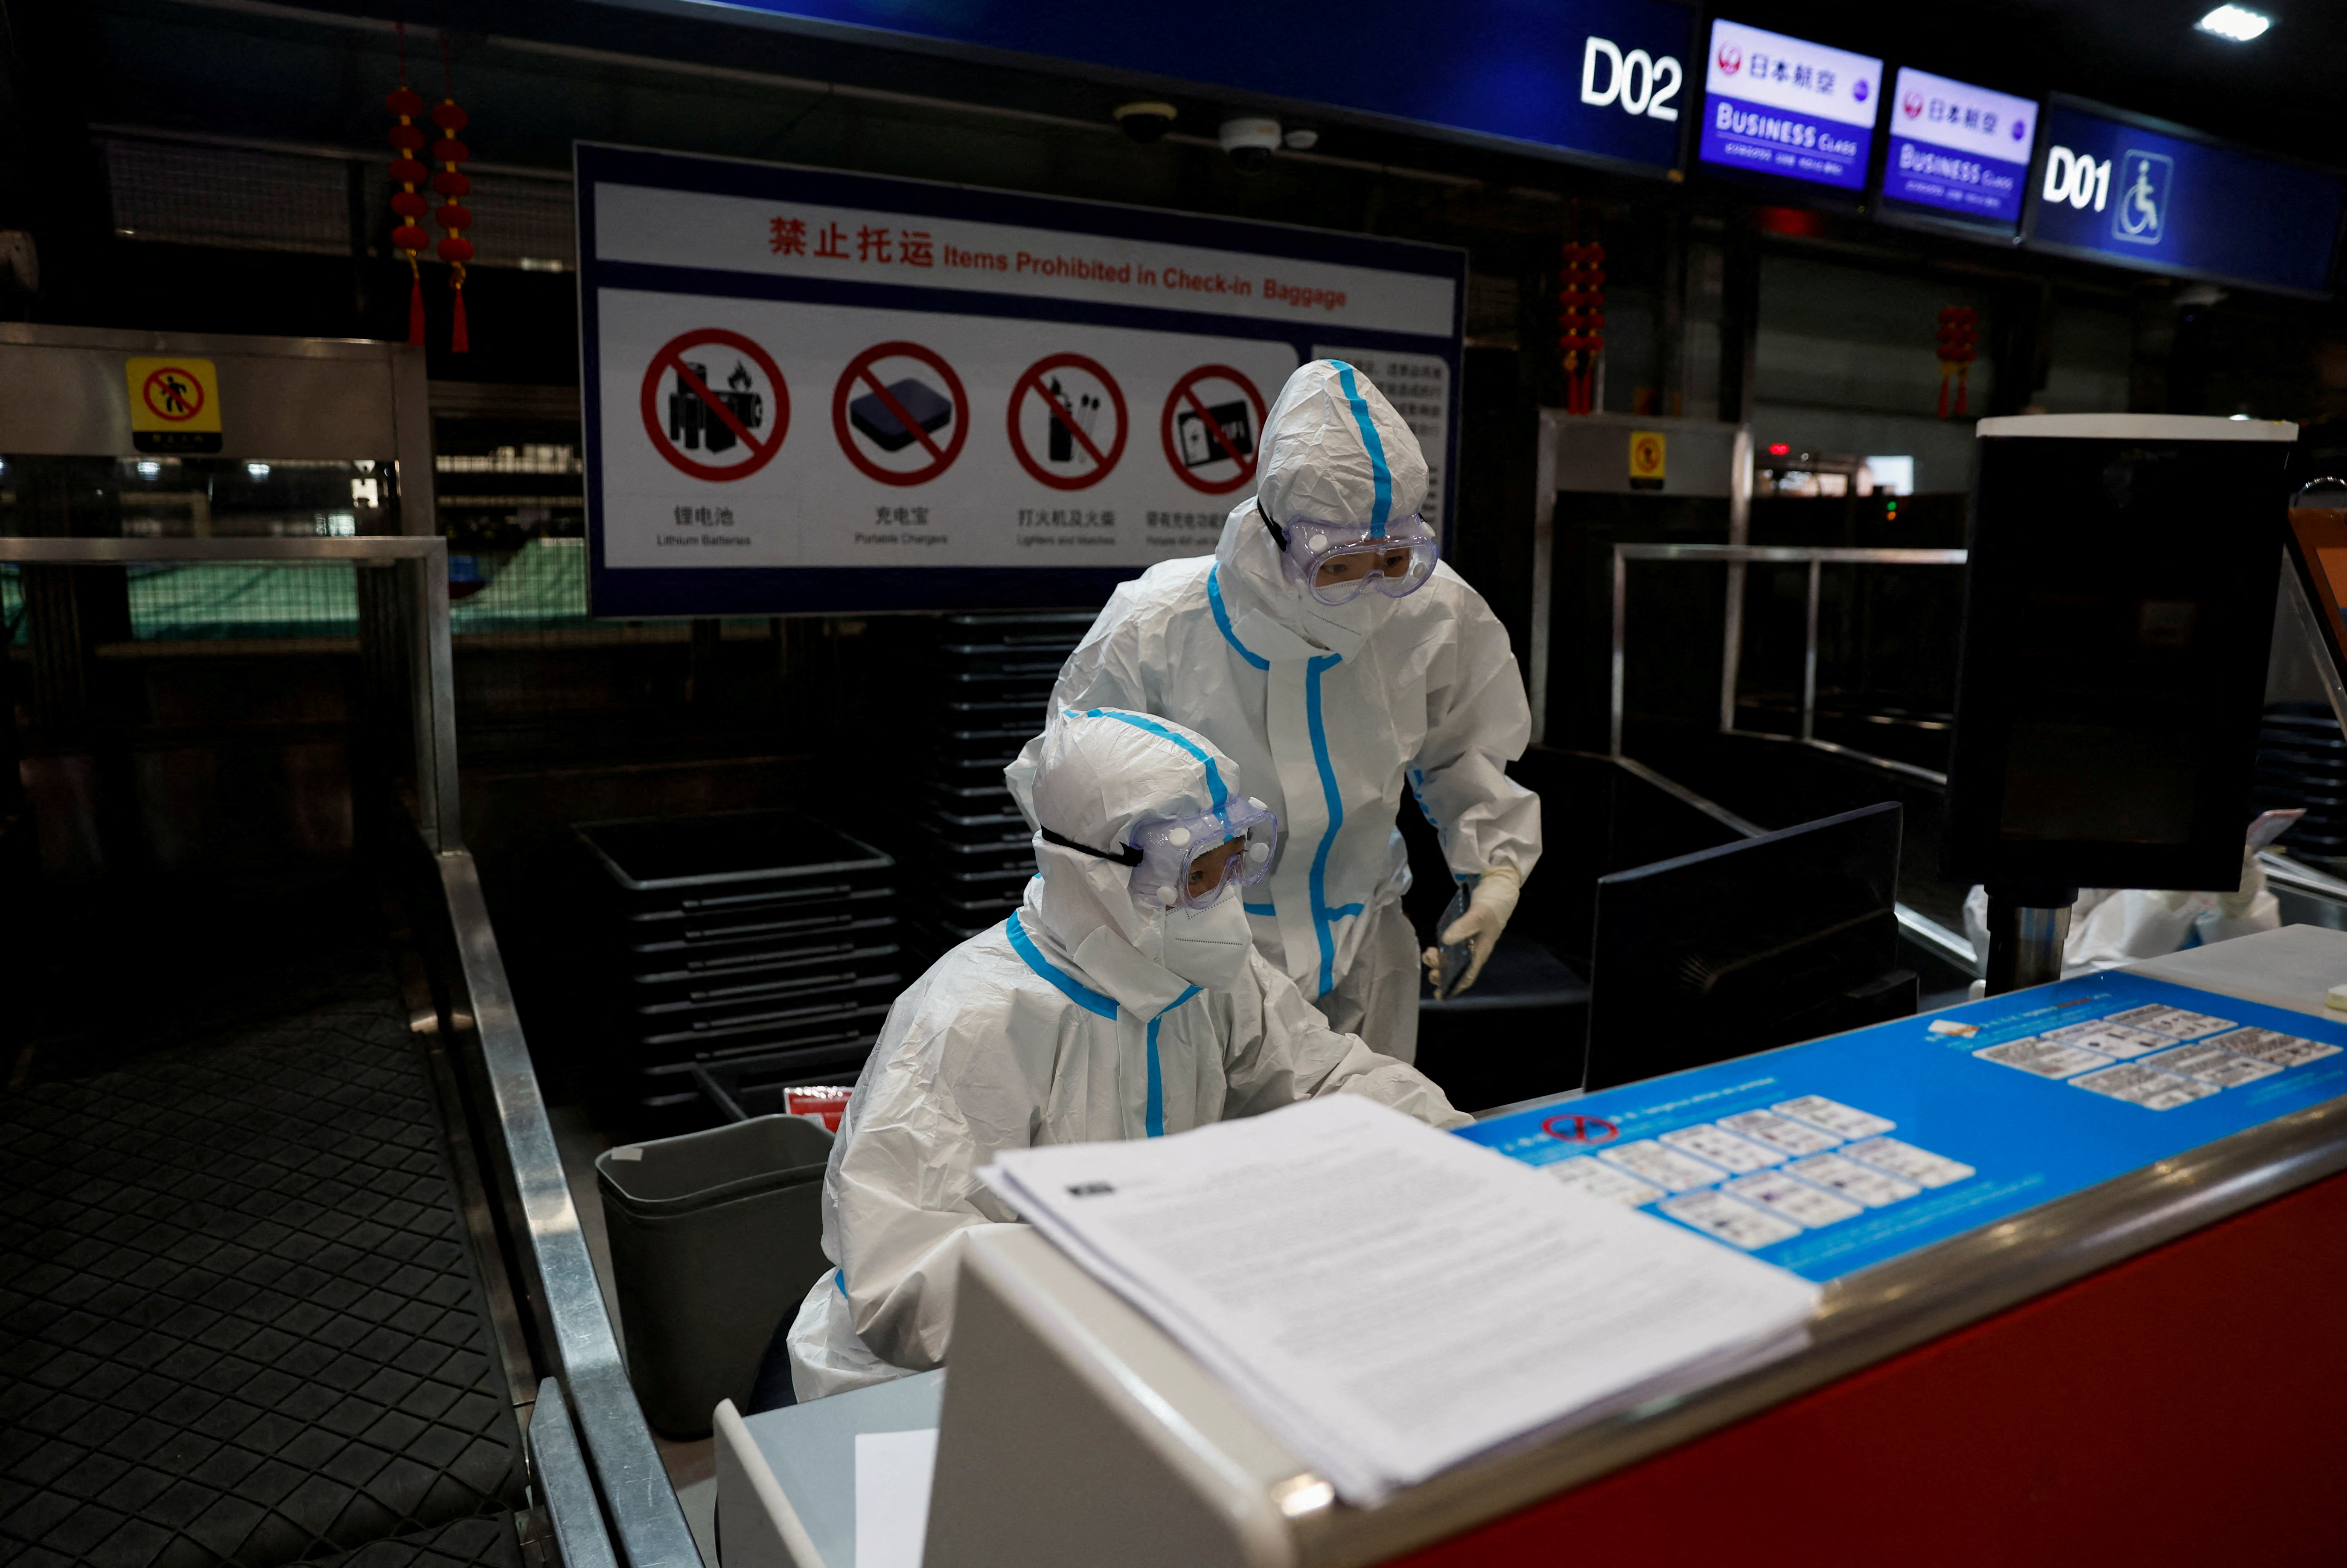 FOTO DE ARCHIVO: El personal de la aerolínea usa equipo de protección personal (EPP) para protegerse contra la enfermedad por coronavirus (COVID-19) mientras trabajan en el aeropuerto internacional de Beijing Capital en Beijing, China, el 13 de marzo de 2022. REUTERS/Soe Zeya Tun/Foto de archivo
